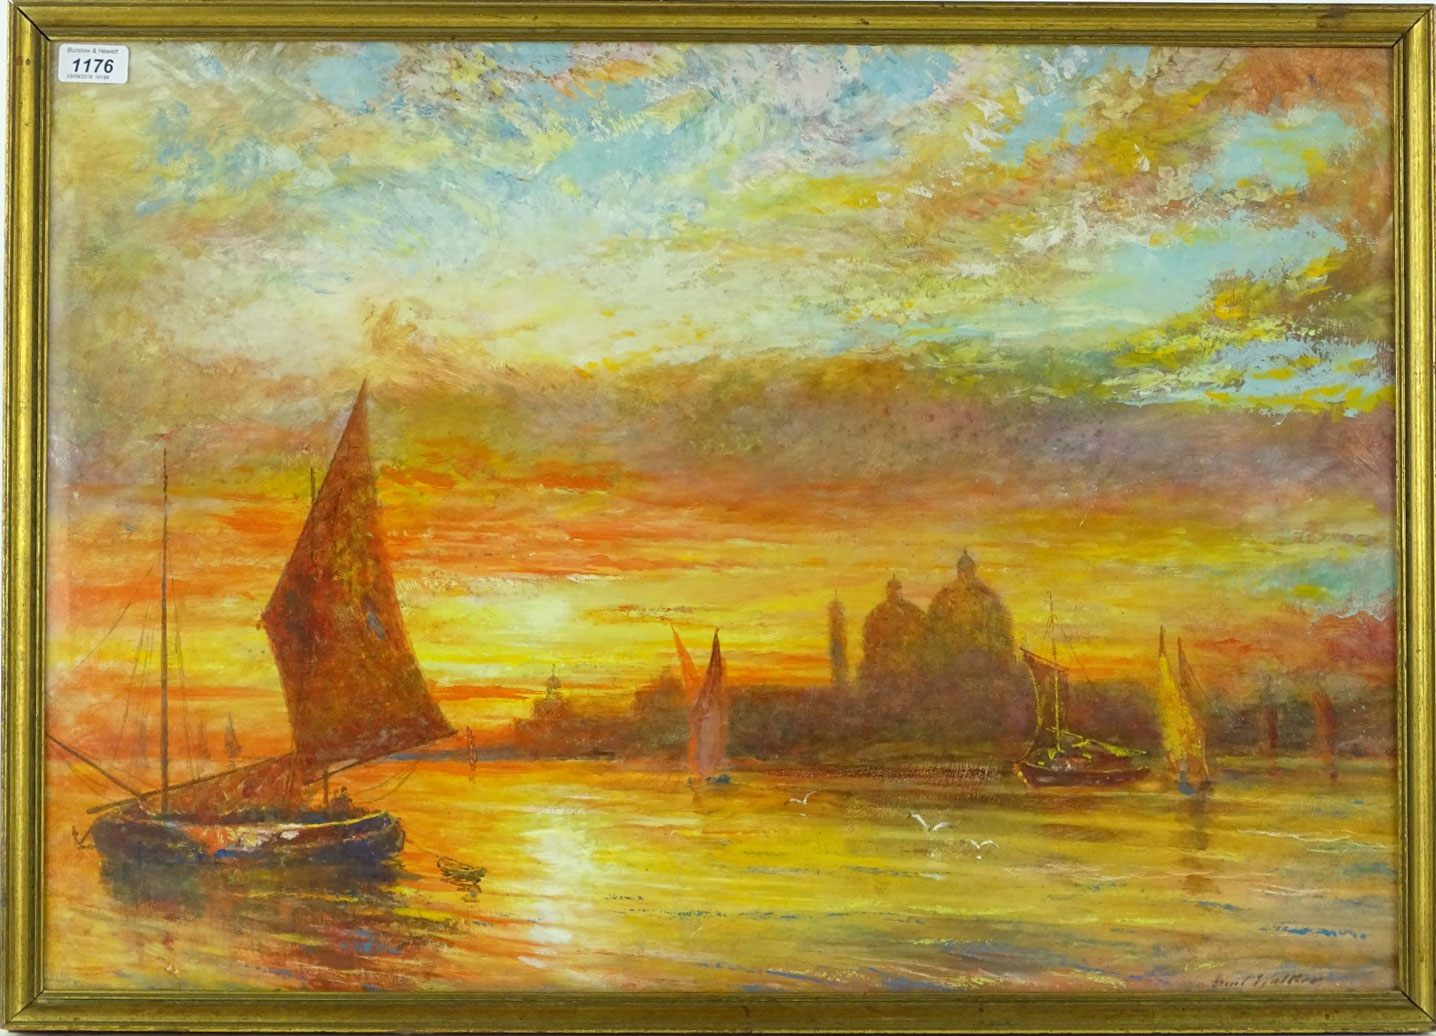 Venice scene sunset - framed